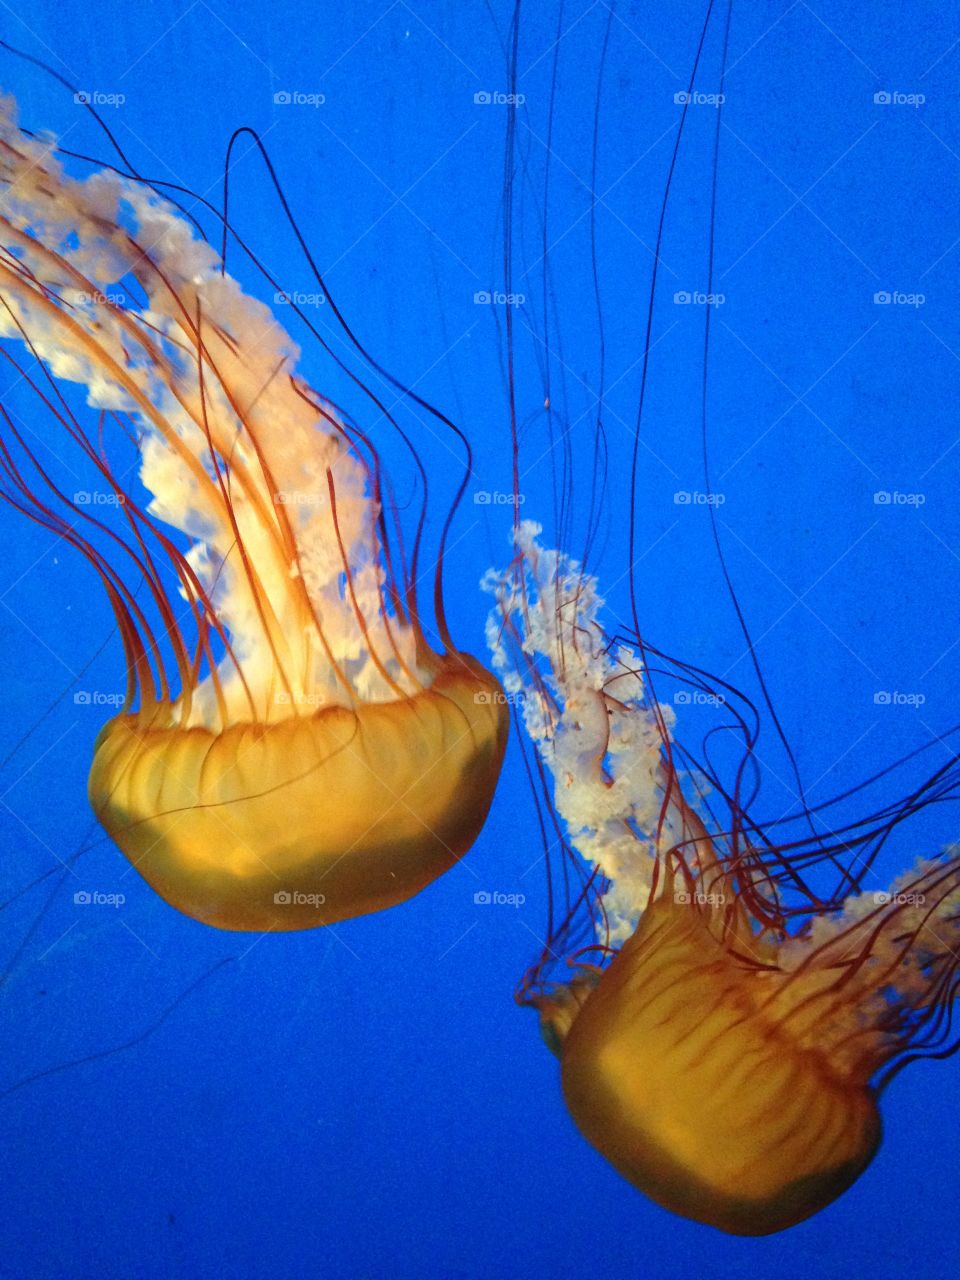 Jellyfish at aquarium 